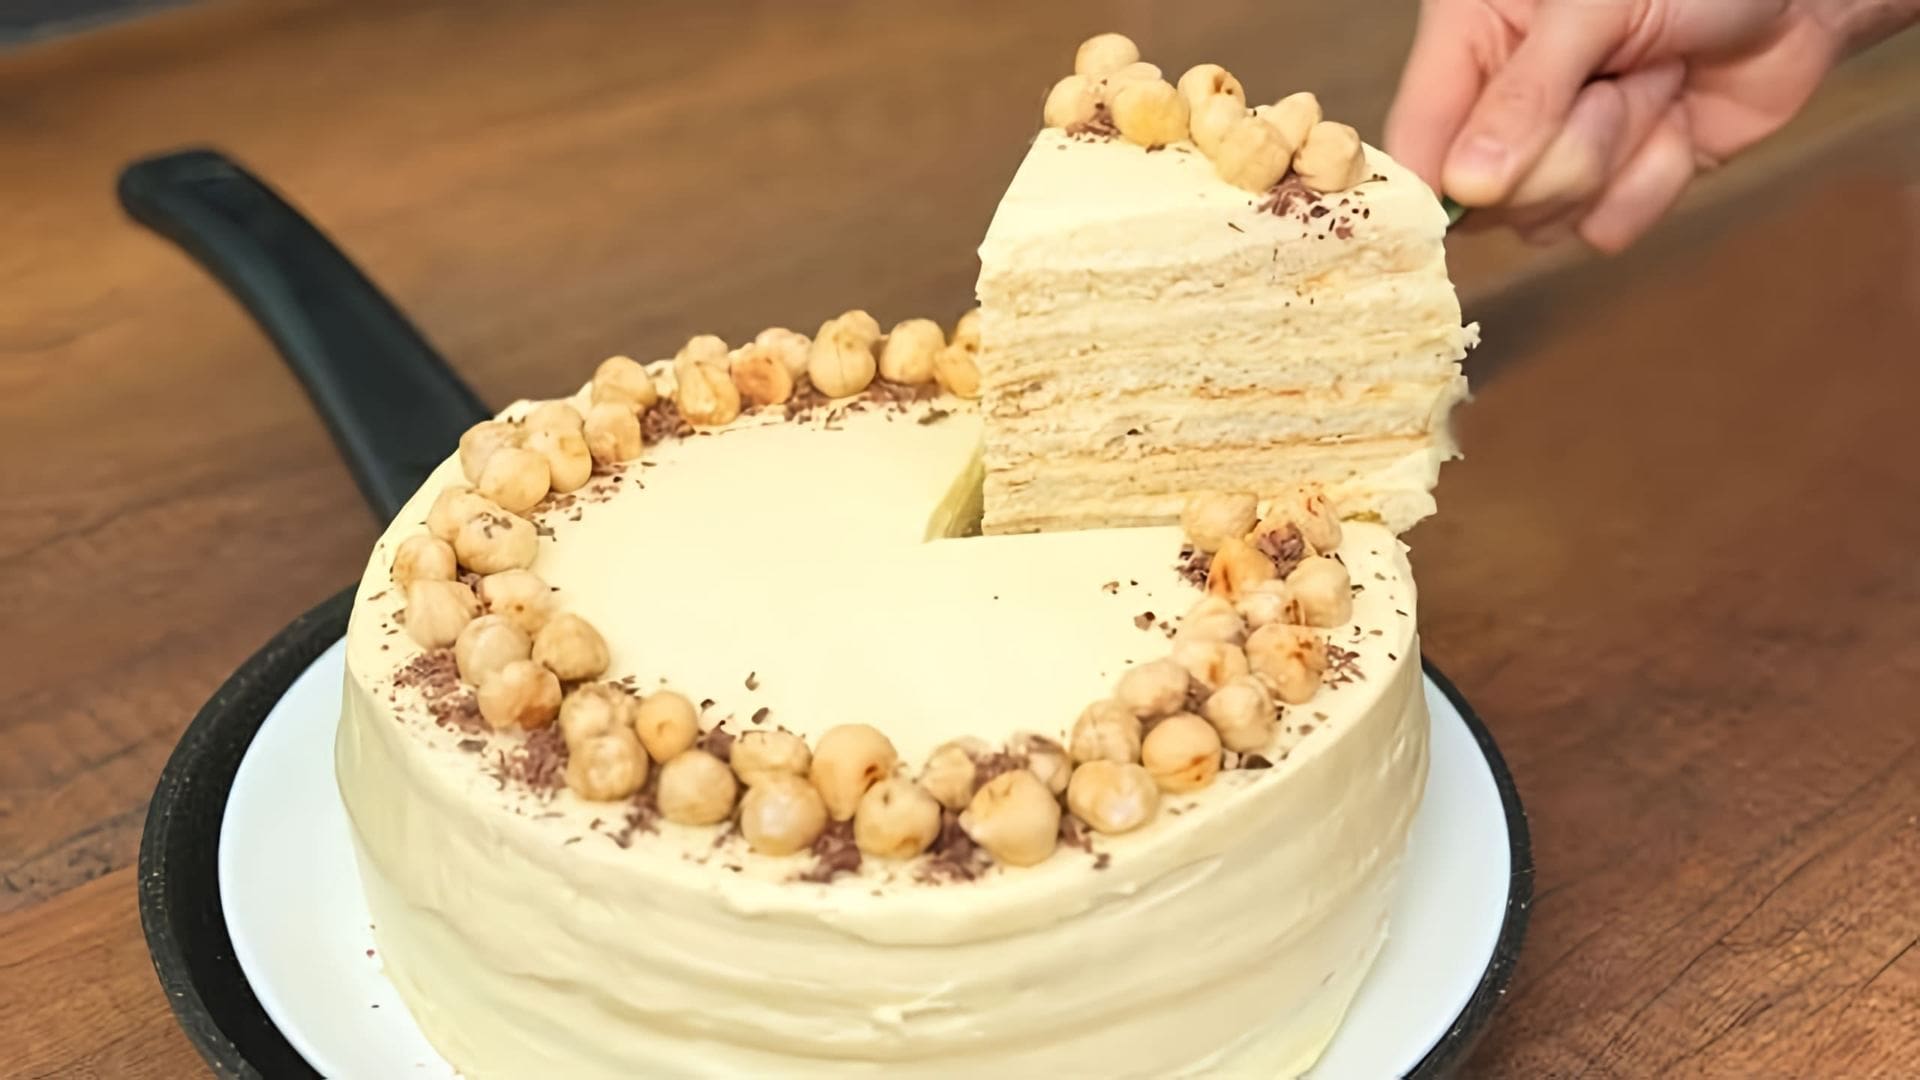 В этом видео демонстрируется процесс приготовления торта на сковороде без использования духовки